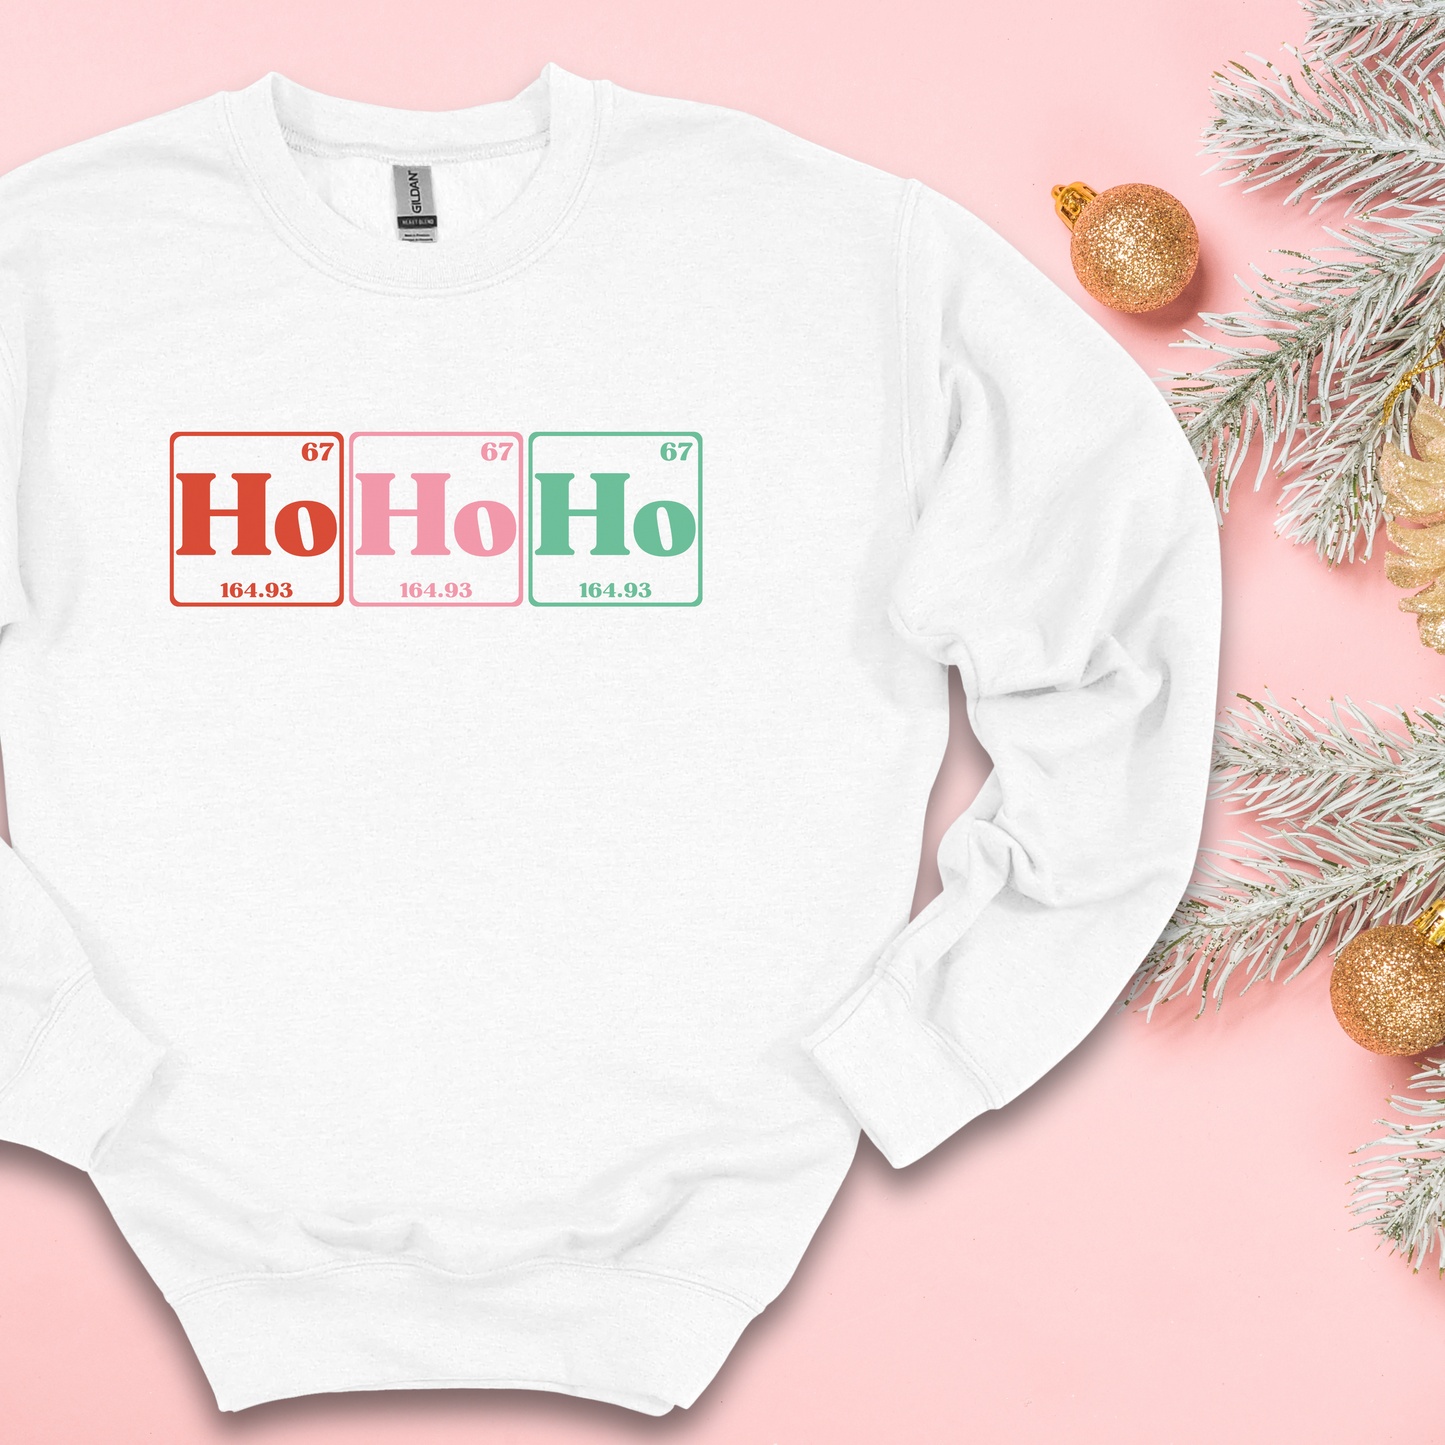 Ho Ho Ho Crewneck Sweatshirt, Christmas Crewneck Sweatshirt, Christmas Sweatshirt, Holiday Sweatshirt